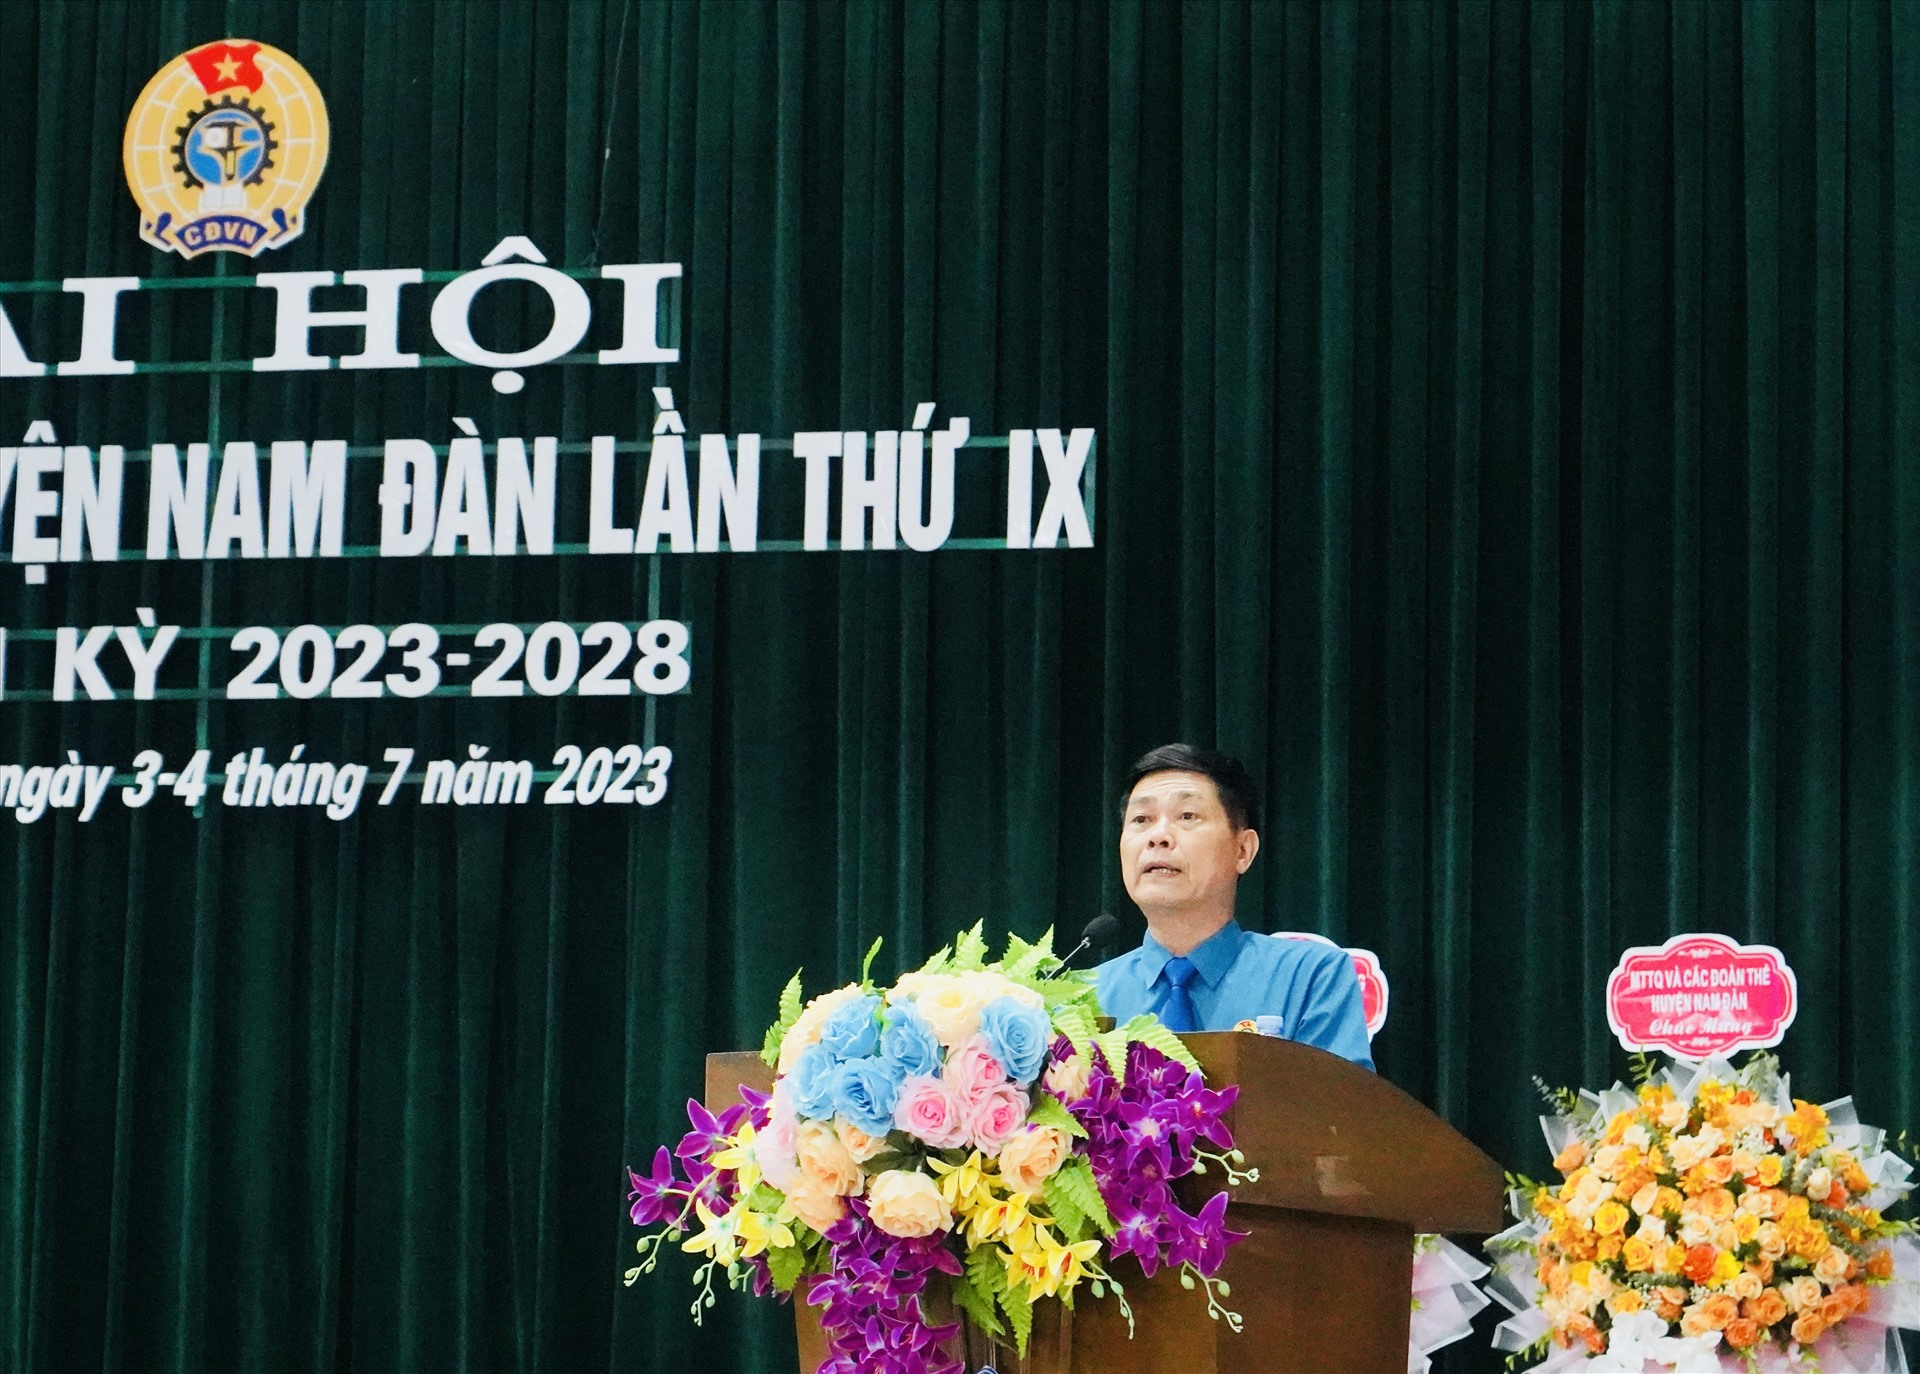 Ông Trần Đình Sáu – Chủ tịch Công đoàn huyện Nam Đàn phát biểu báo cáo tại đại hội. Ảnh: Quỳnh Trang